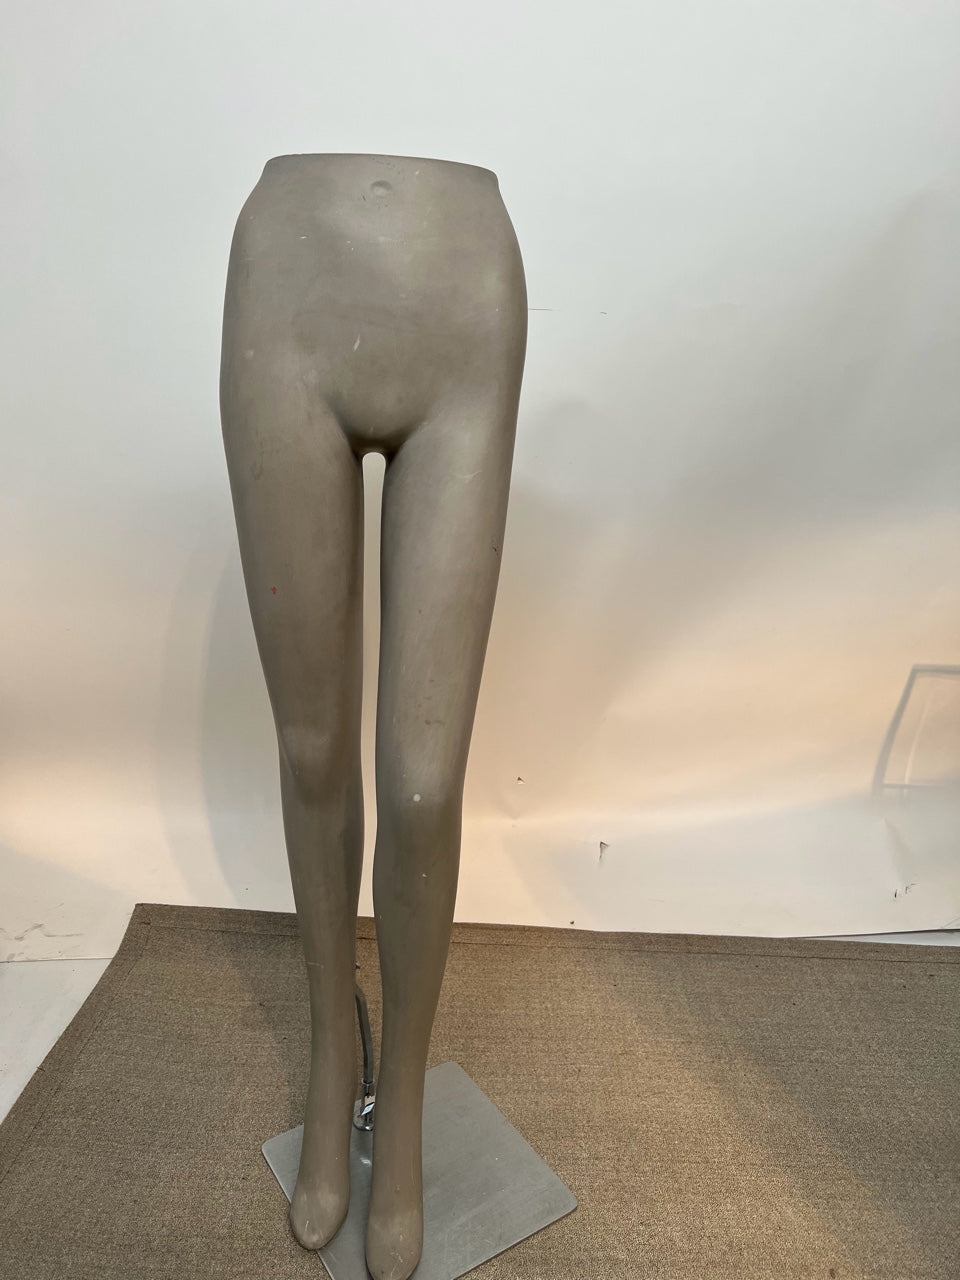 Used Female Mannequin Legs